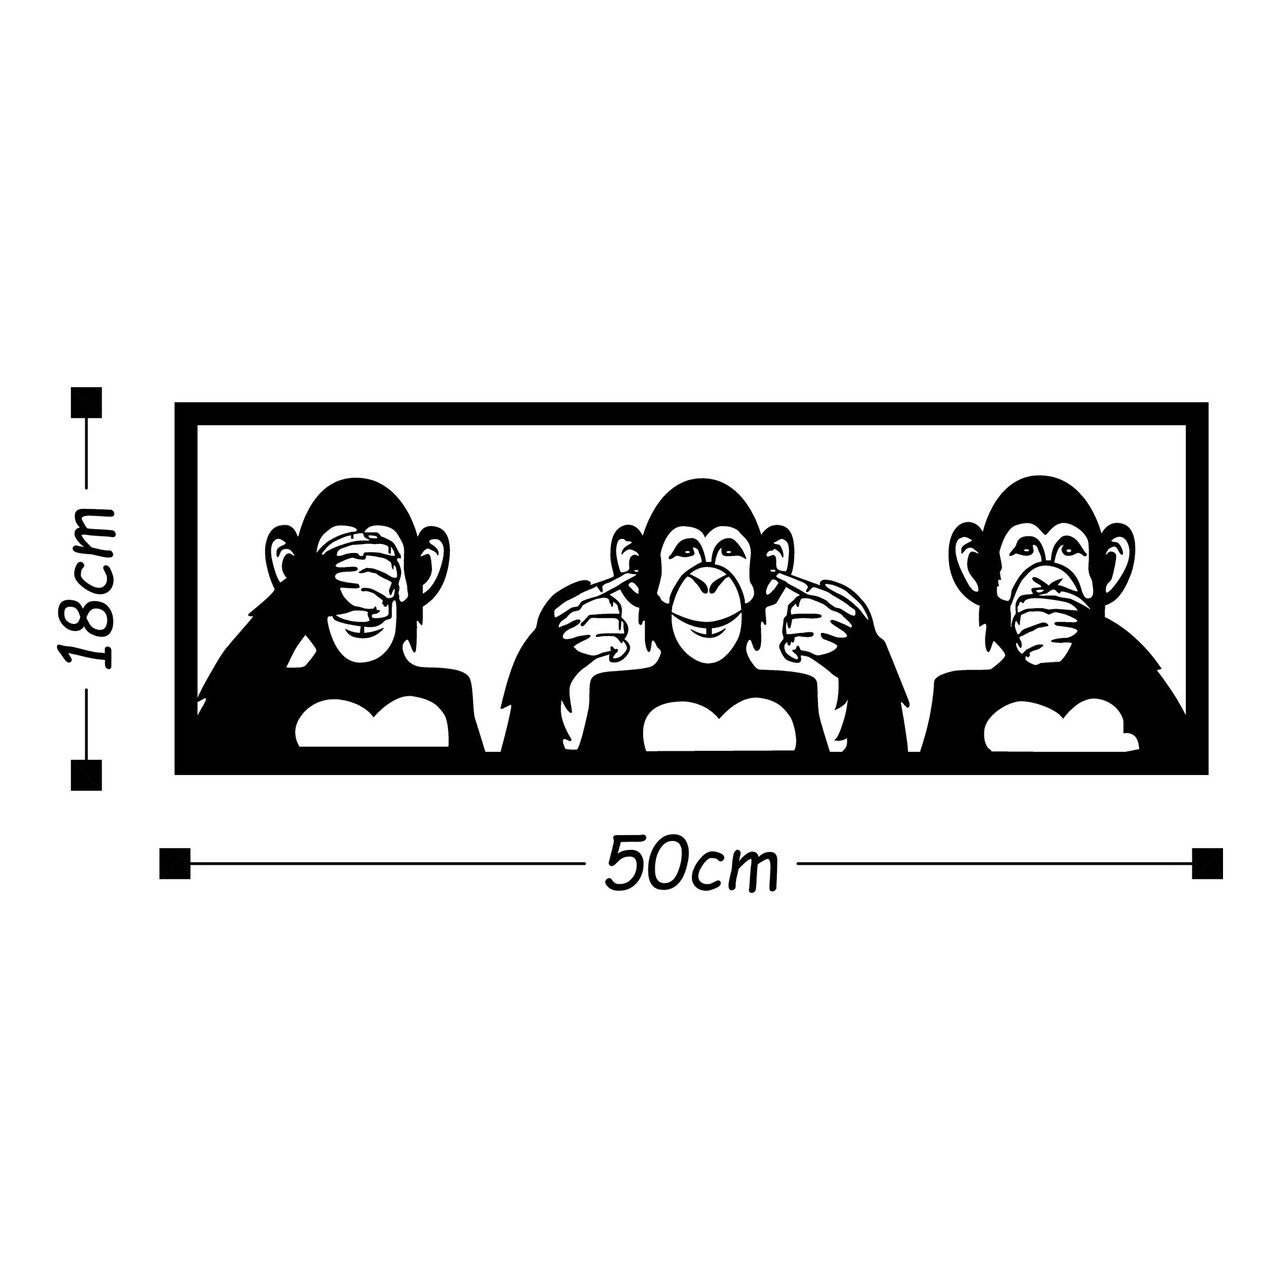 Three Monkeys S Fali Dekoráció, Tanelorn, 50x18 Cm, Fém